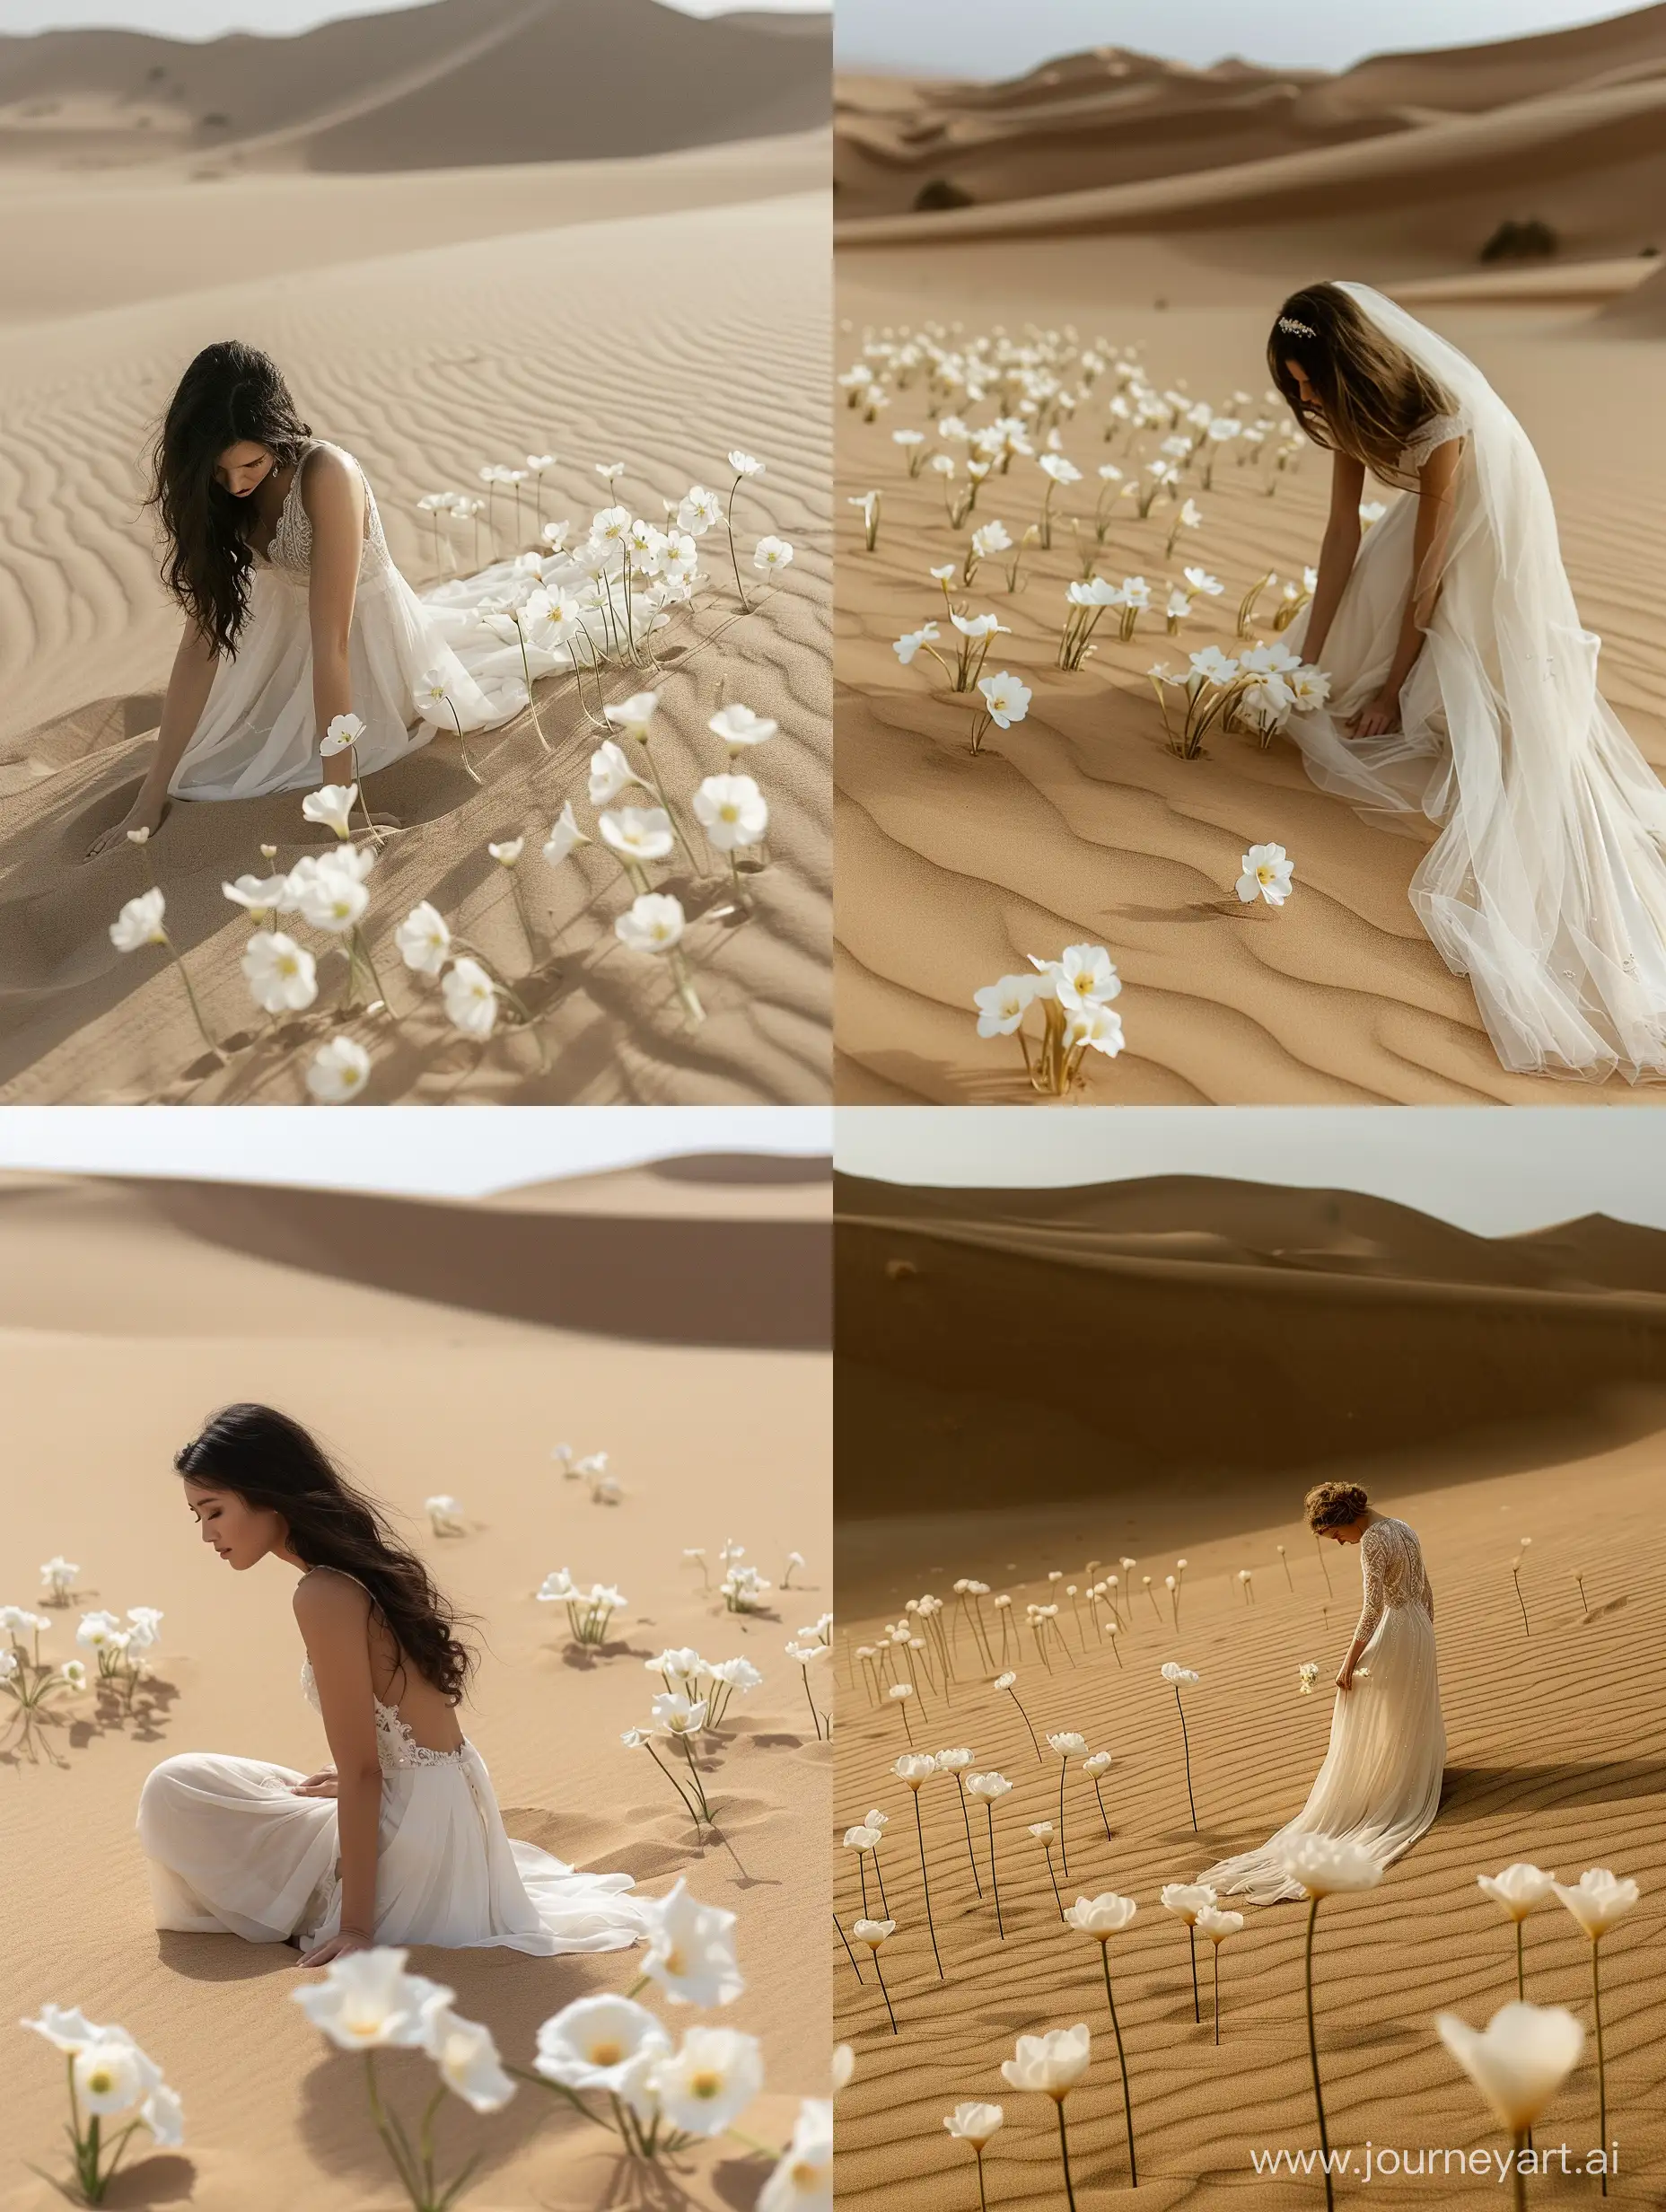 невеста в пустыне, идеально ровный песок, 100 одиночных белых цветков воткнуты в песок, другой растительности нет